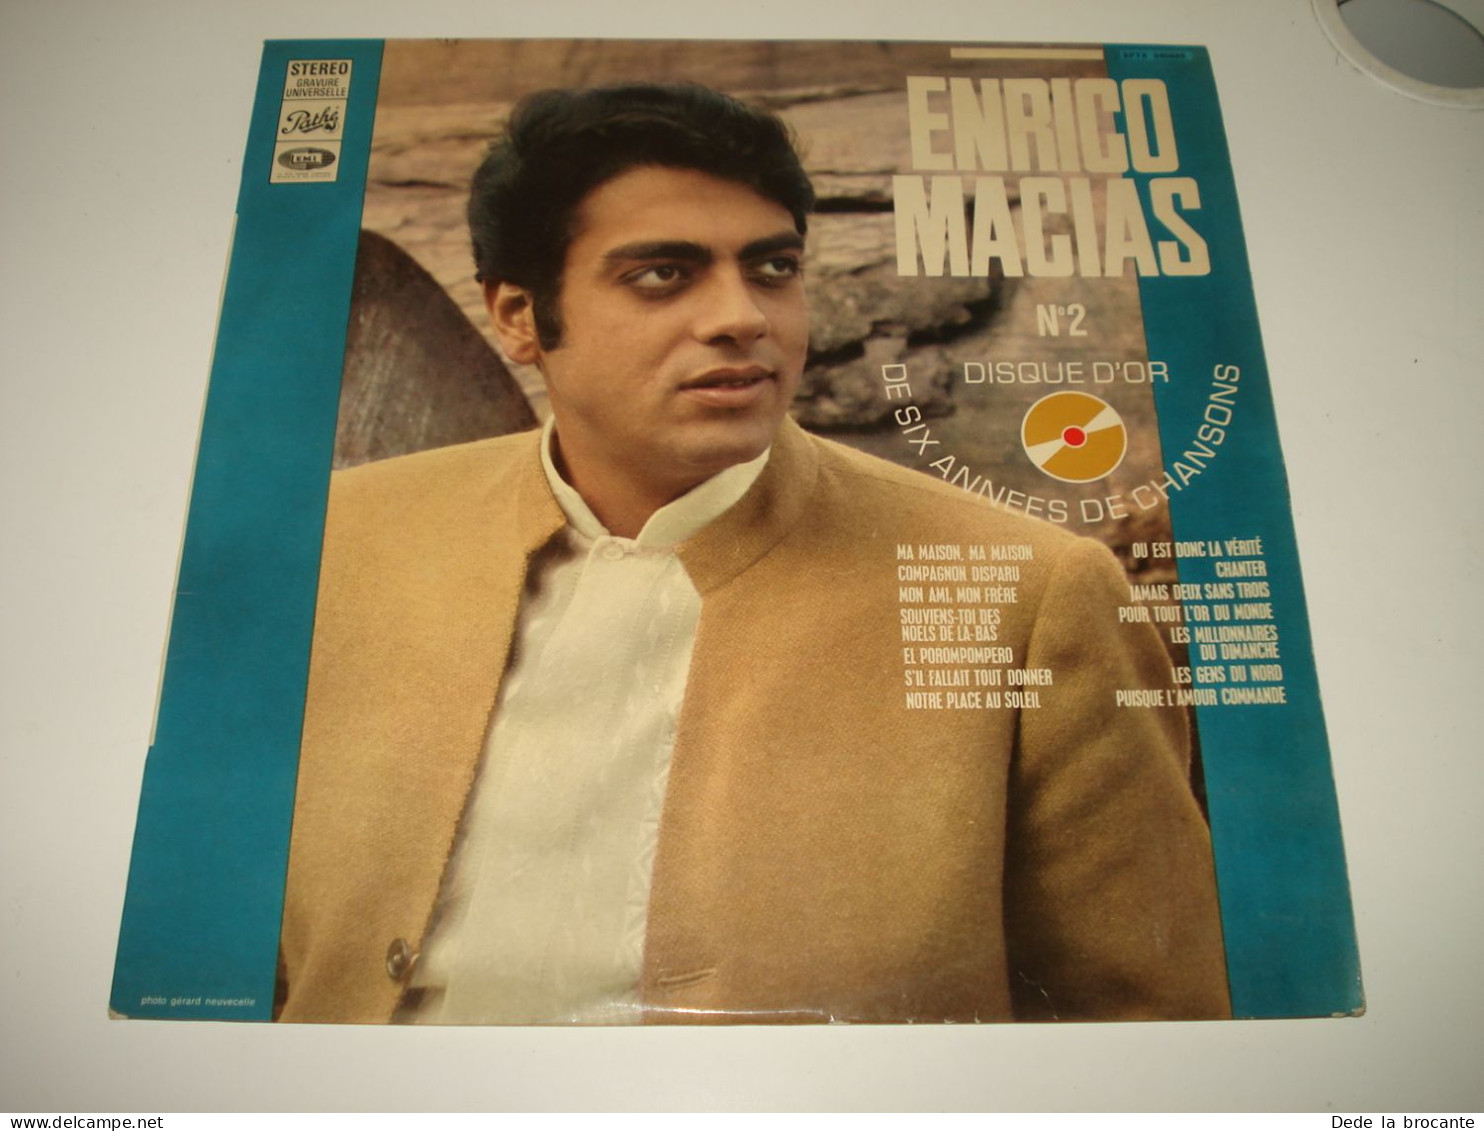 B13 / Enrico Macias – Disque D'or N°2 - Pathé – SPTX 340665 - France 1968  NM/EX - Disco & Pop